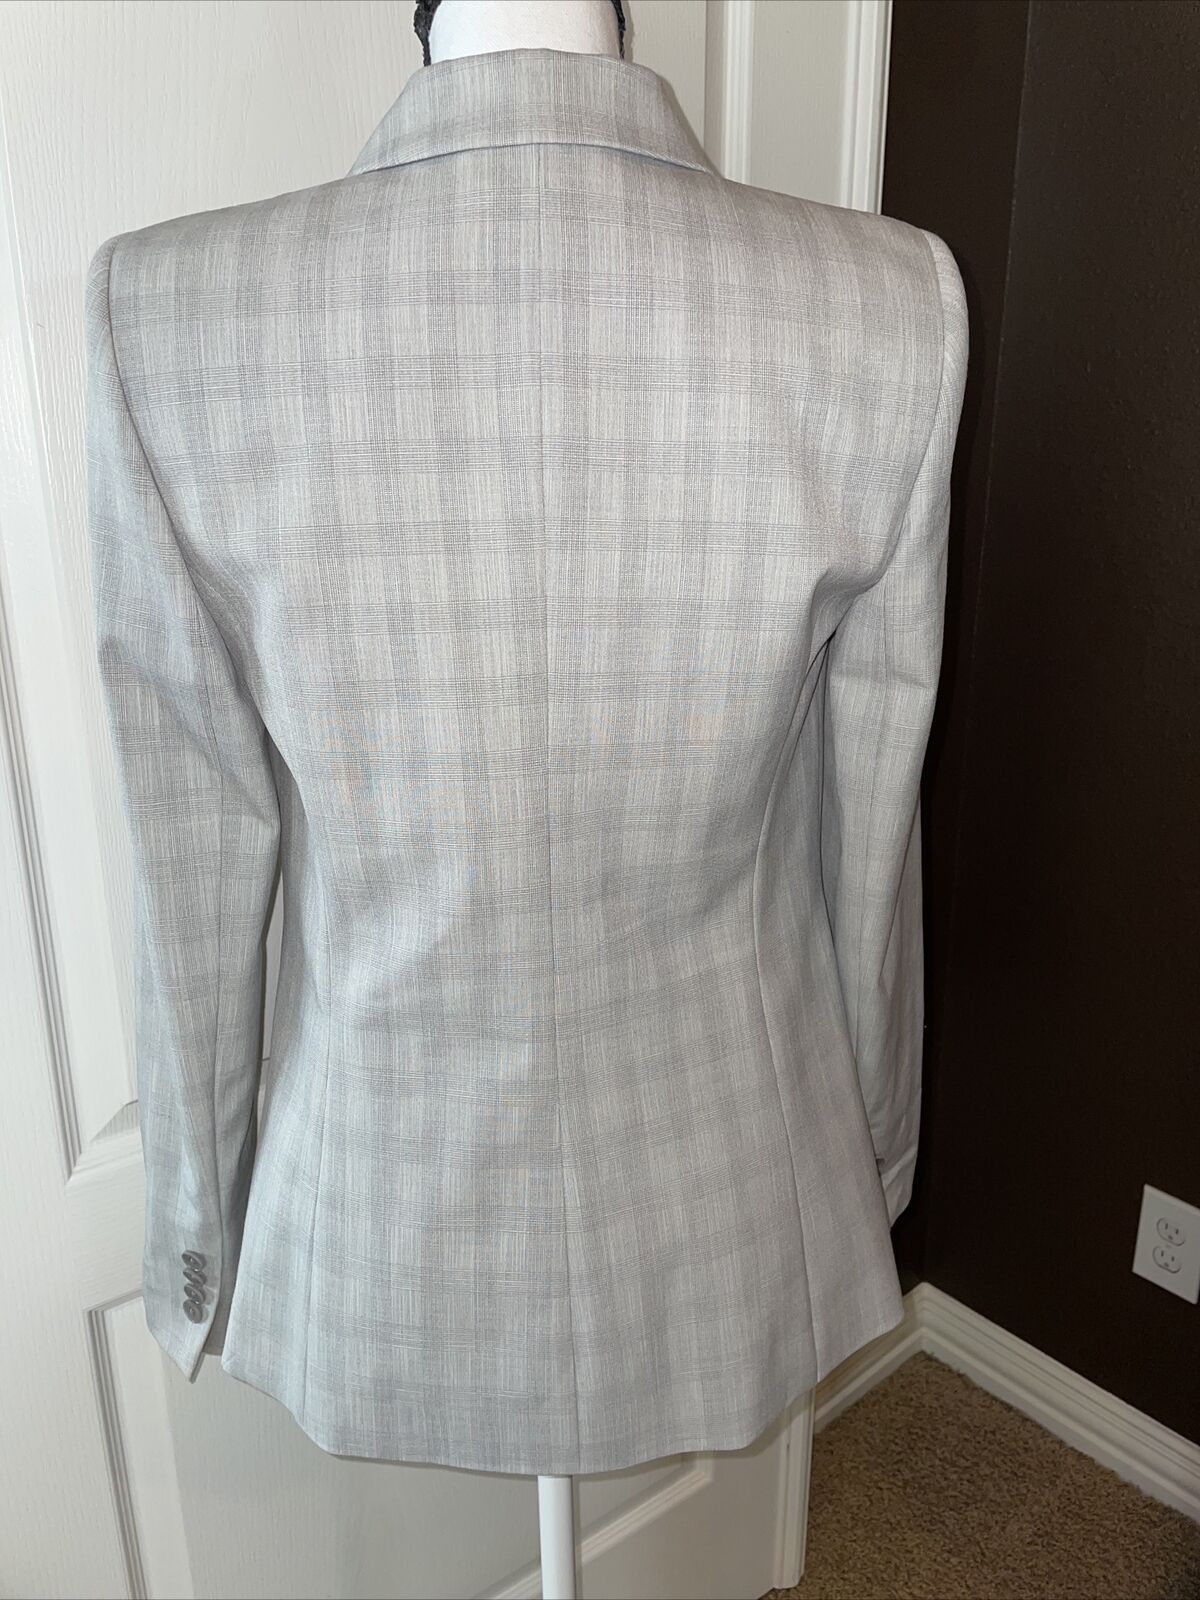 Elie Tahari Grey Gray One button Blazer Jacket Size 4 | eBay